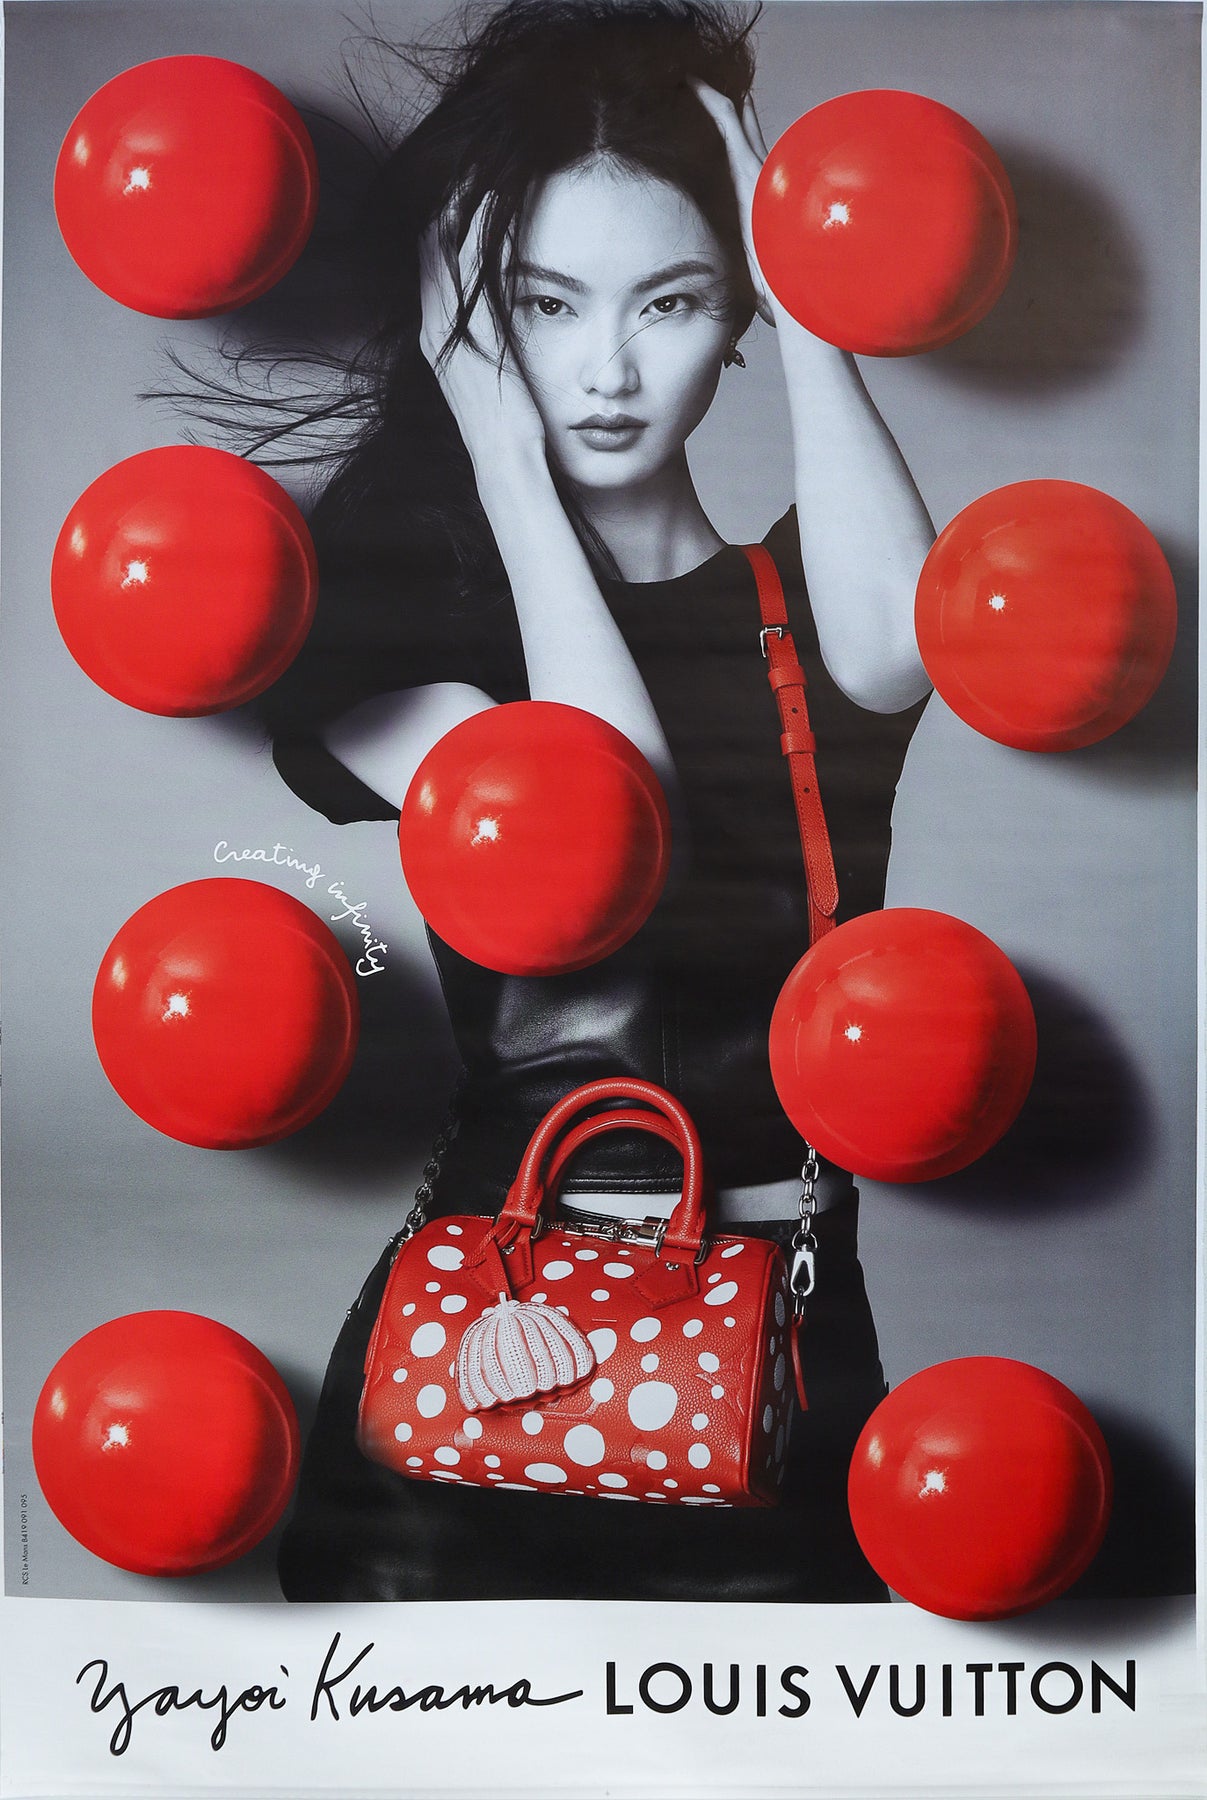 Louis Vuitton - Lea Seydoux Original Vintage Poster